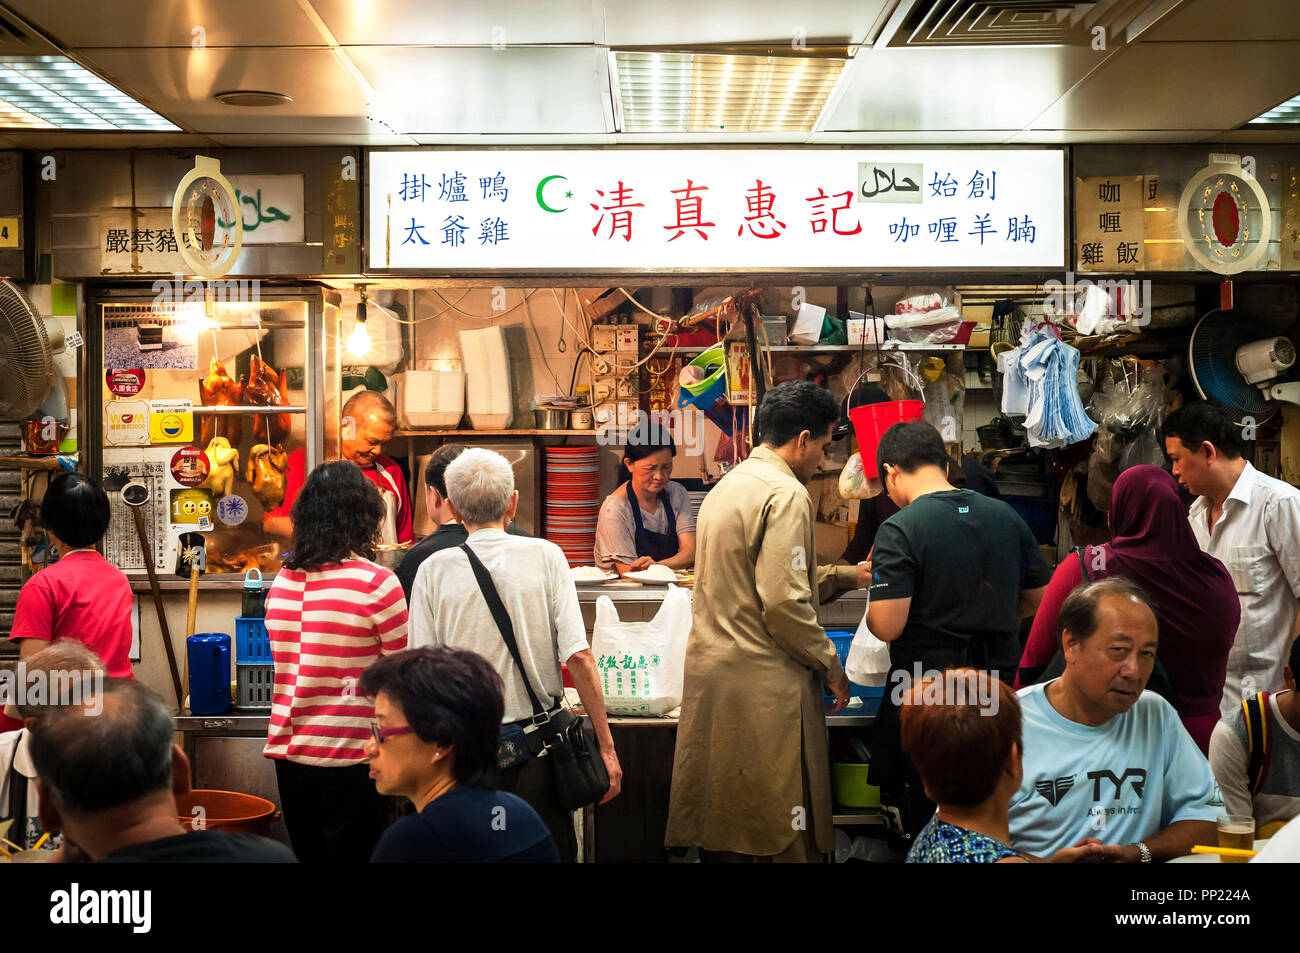 WANCHAI, HONG KONG - Oct 2013 - Almuerzo en un concurrido restaurante musulmán en el Centro de comida cocinada Bowrington Road, Wanchai, Hong Kong Foto de stock